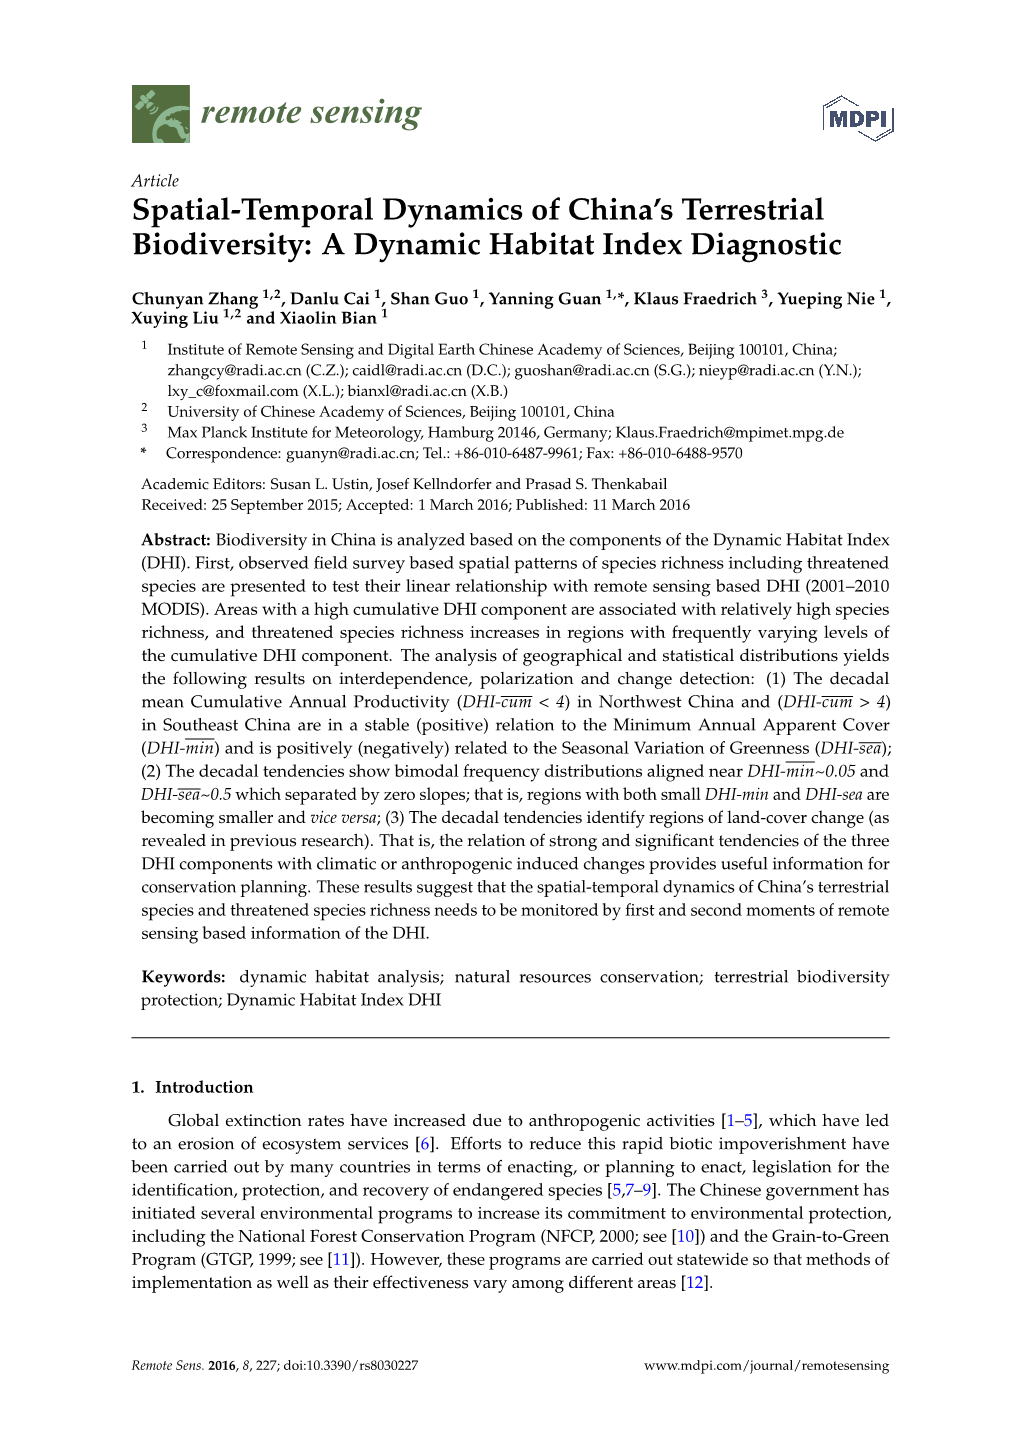 A Dynamic Habitat Index Diagnostic